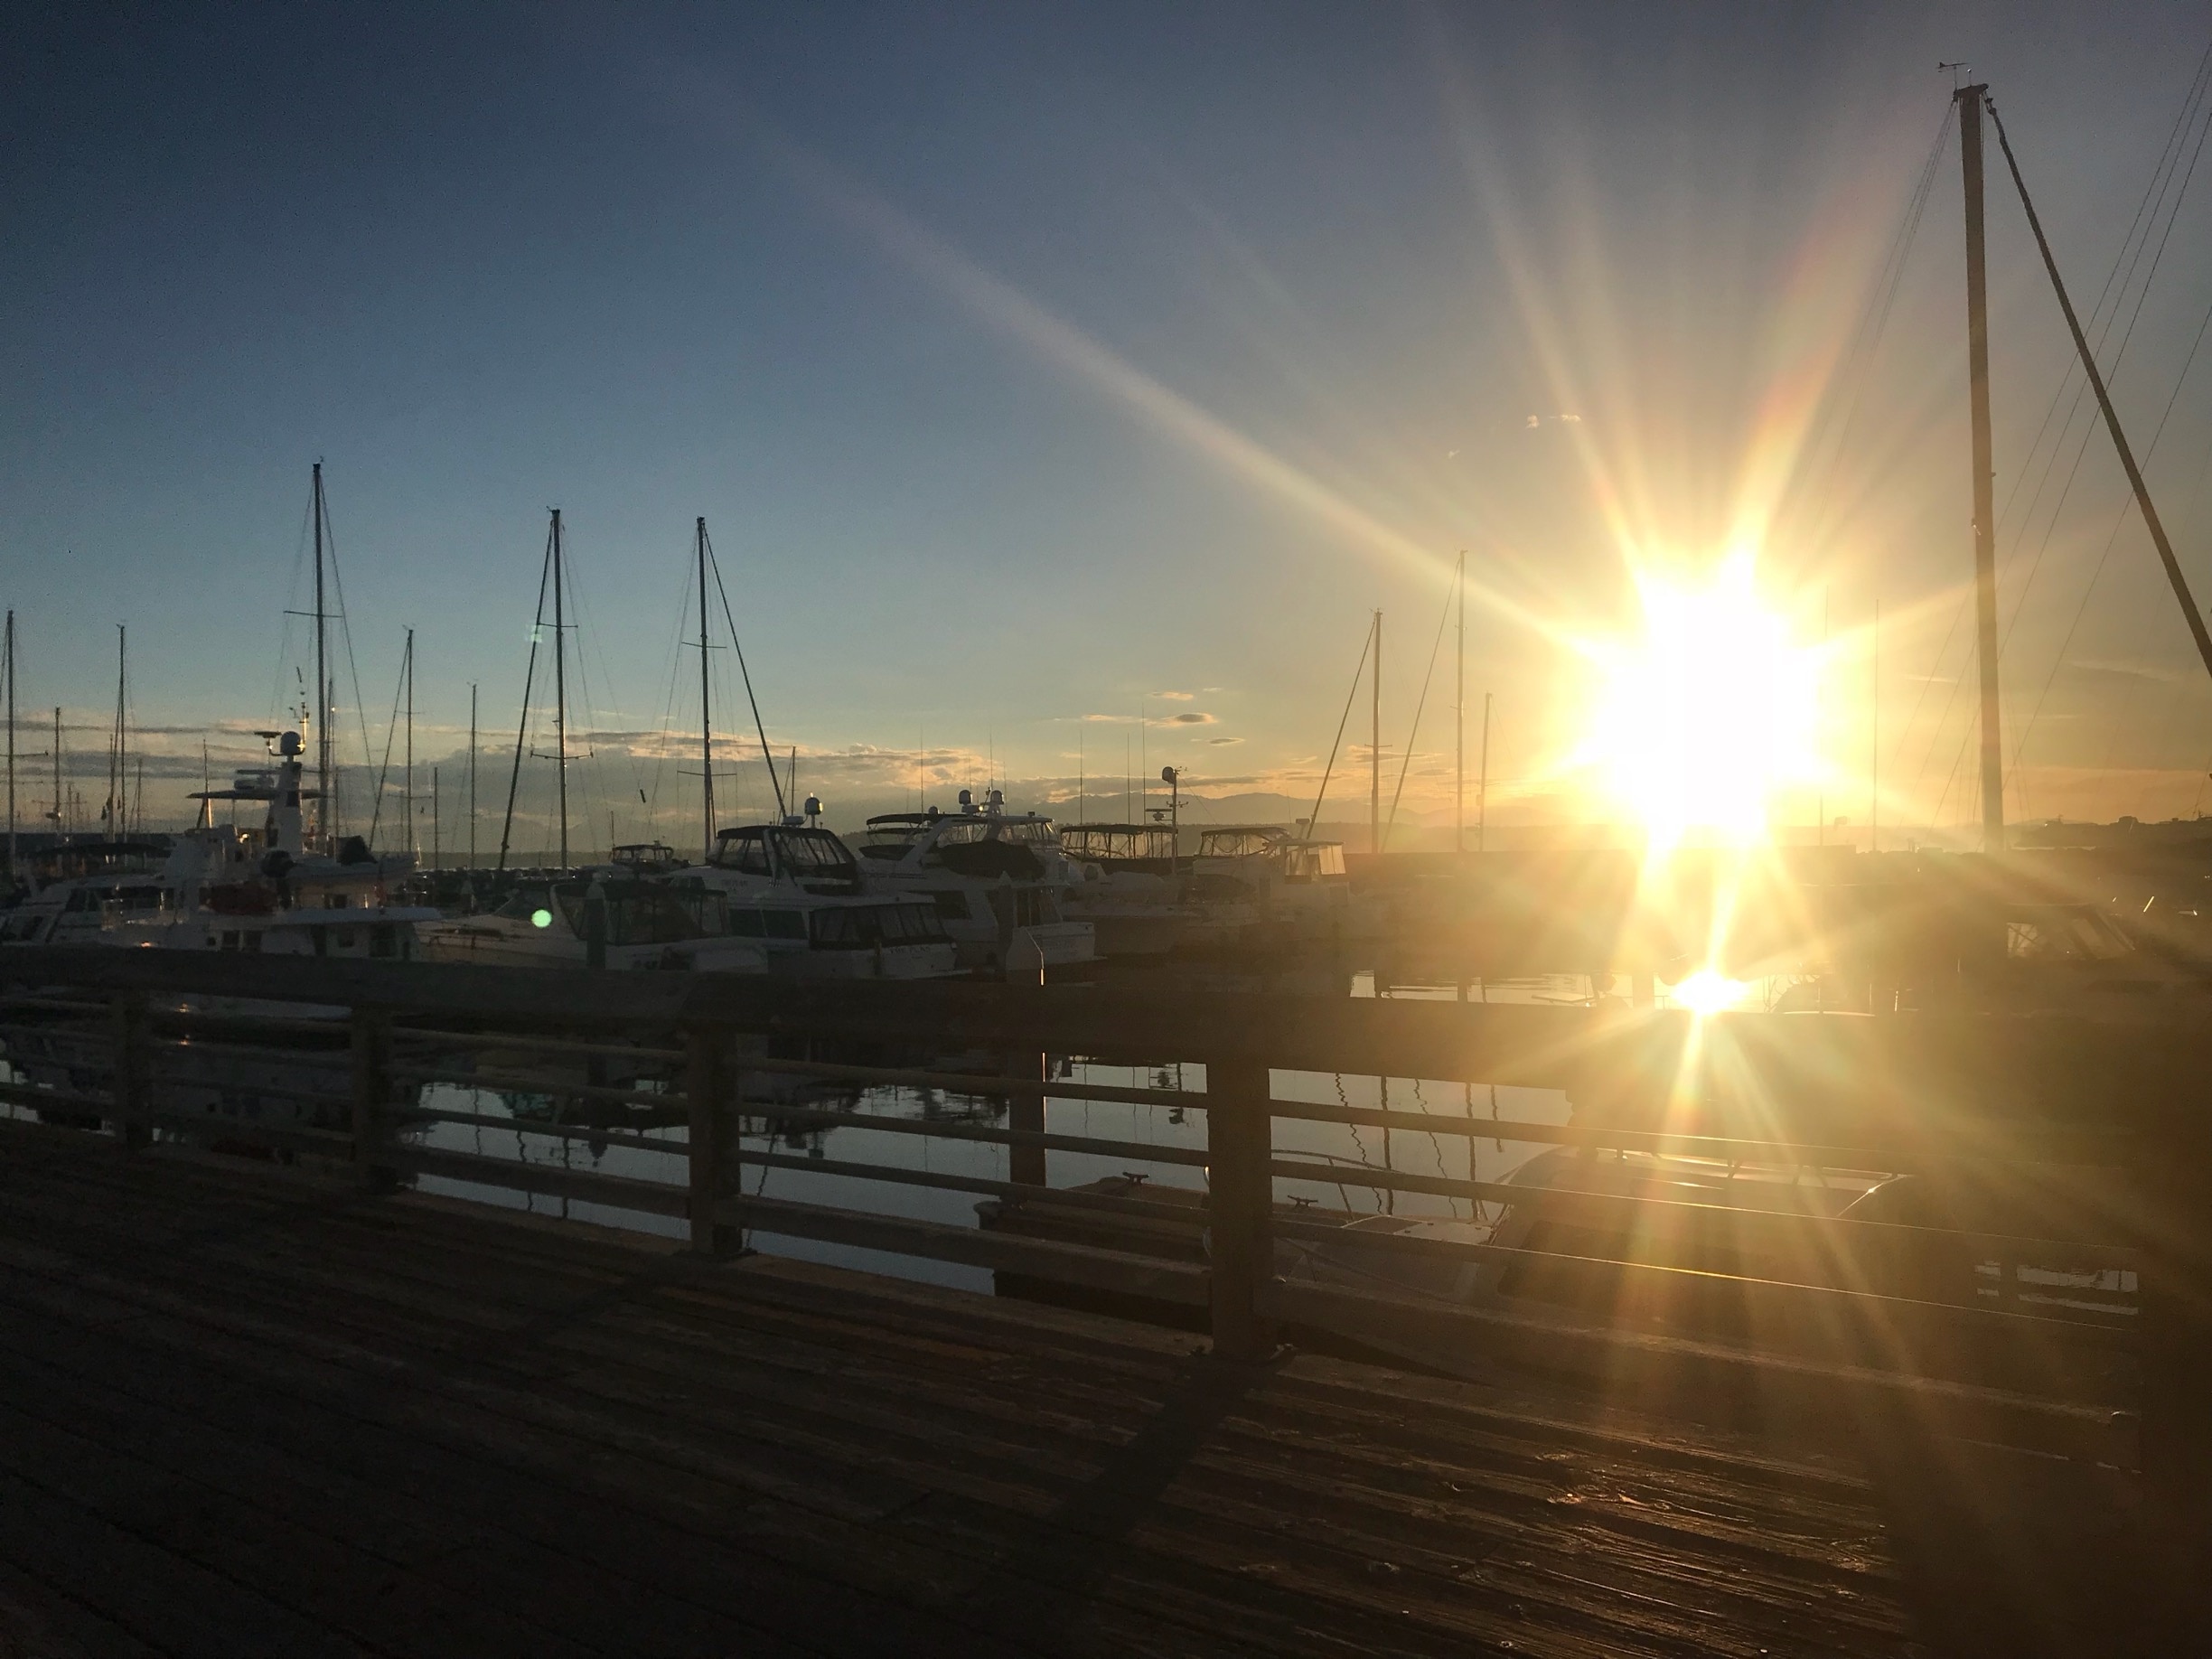 Boats & The Sun
#LifeAtExpedia #Golden #Edmonds #Sunset #YachtClub #Waterfront